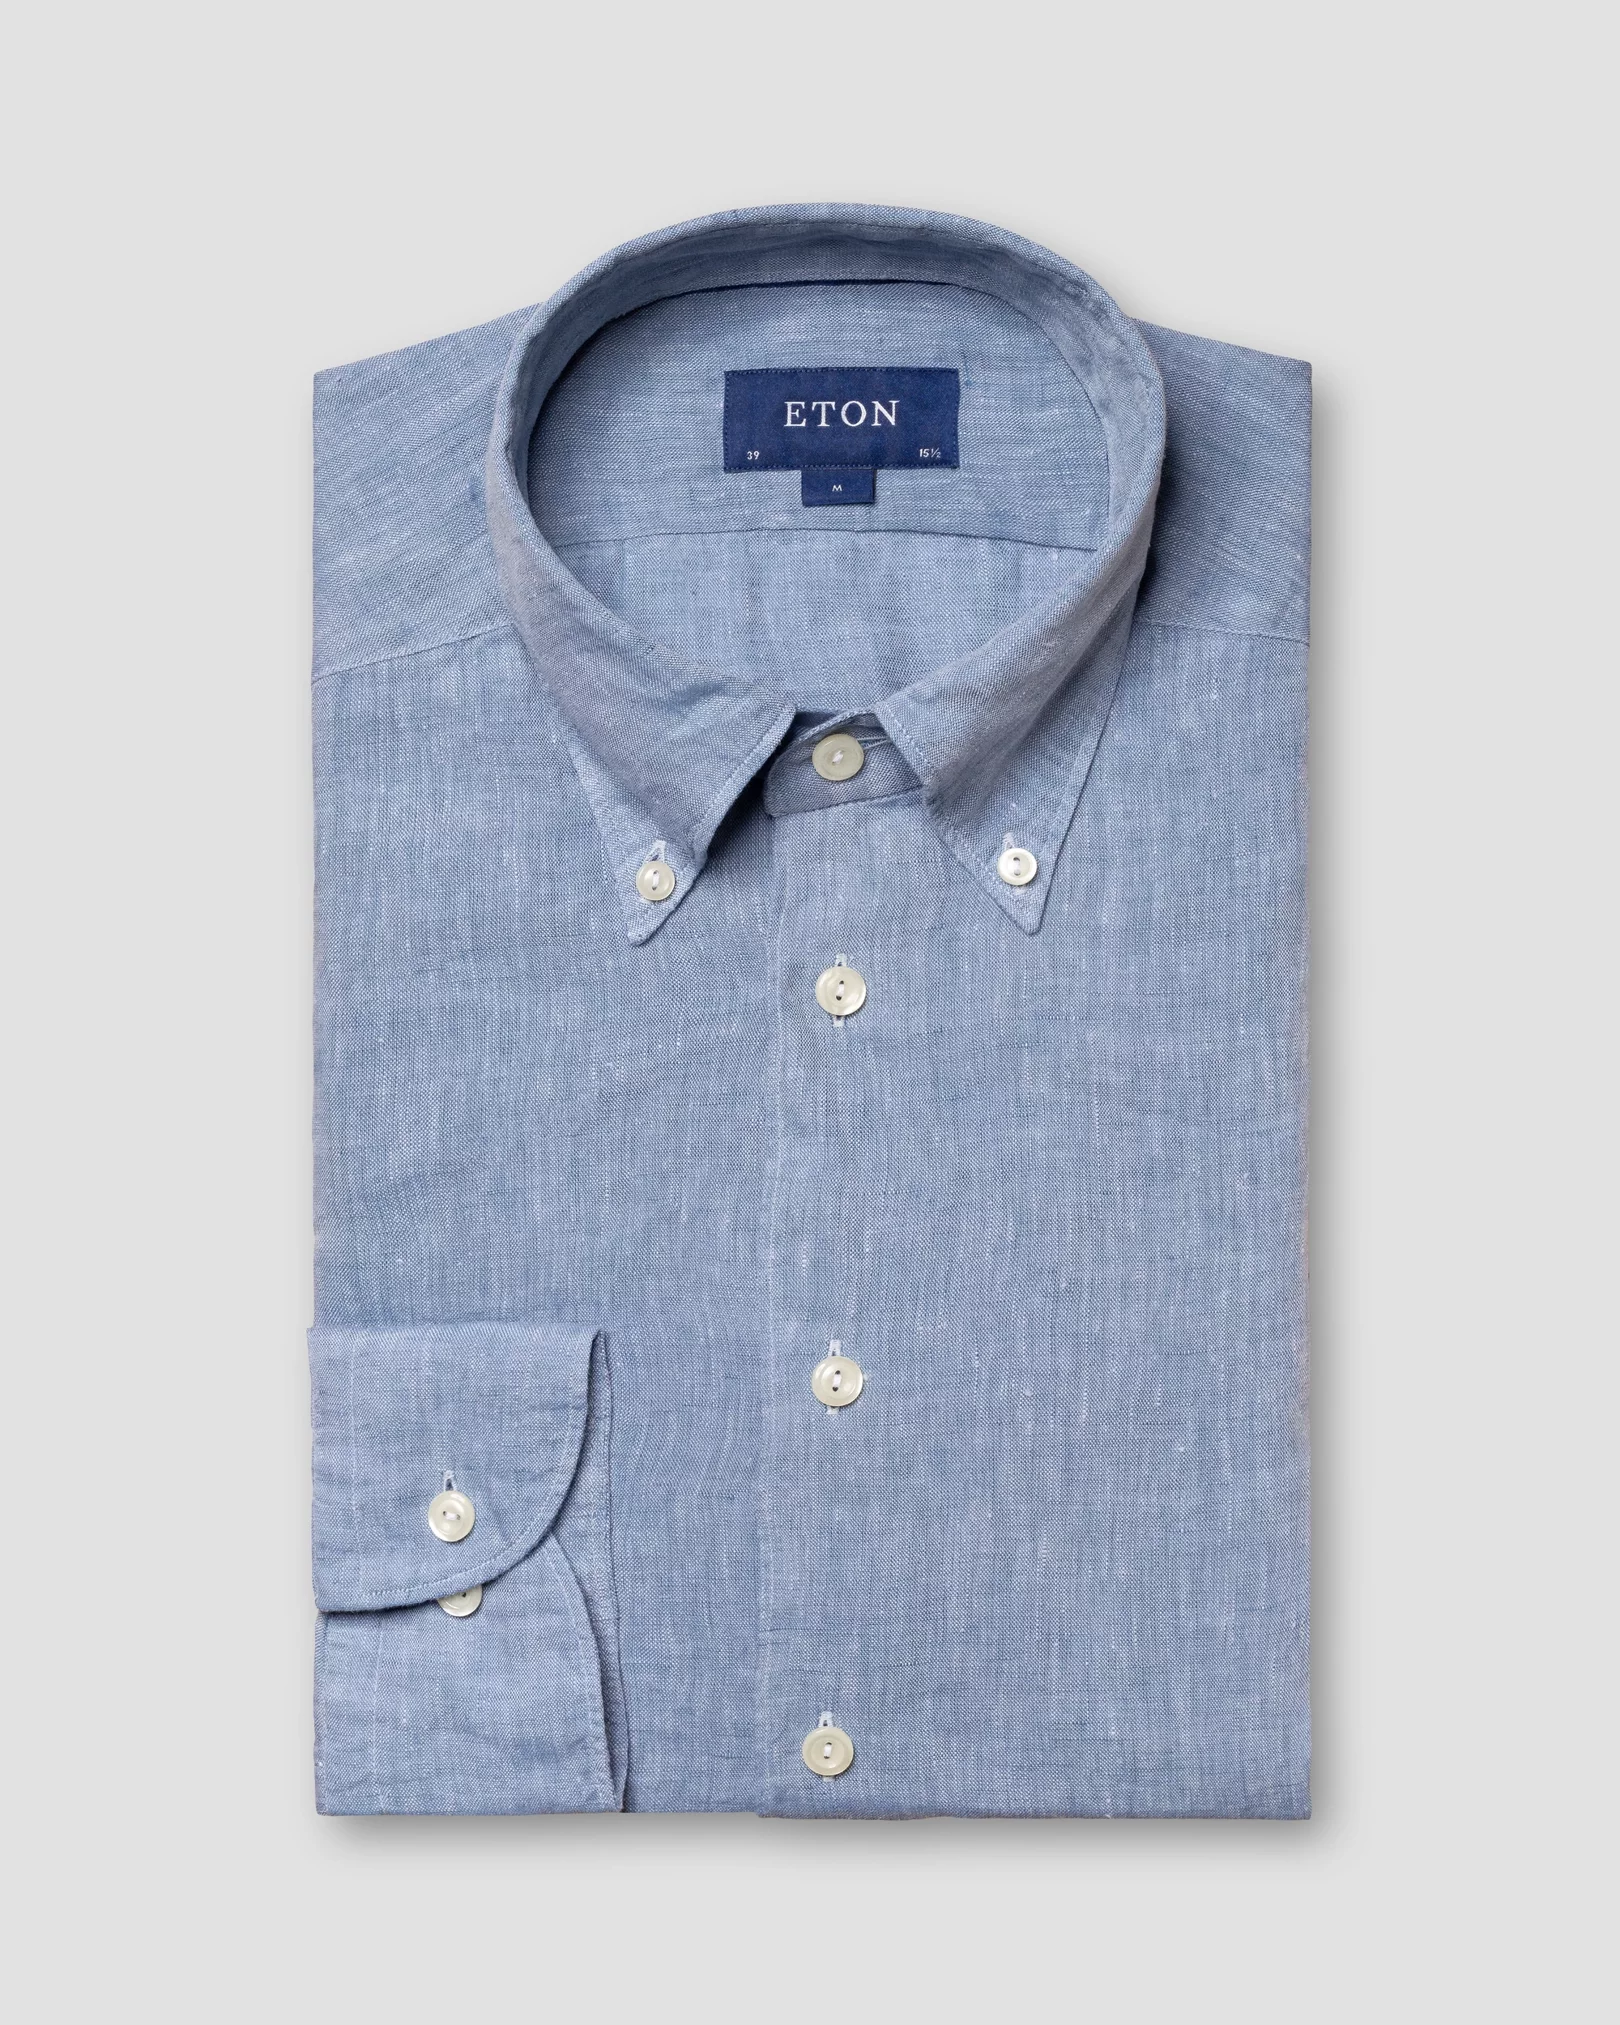 Eton - blue linen shirt